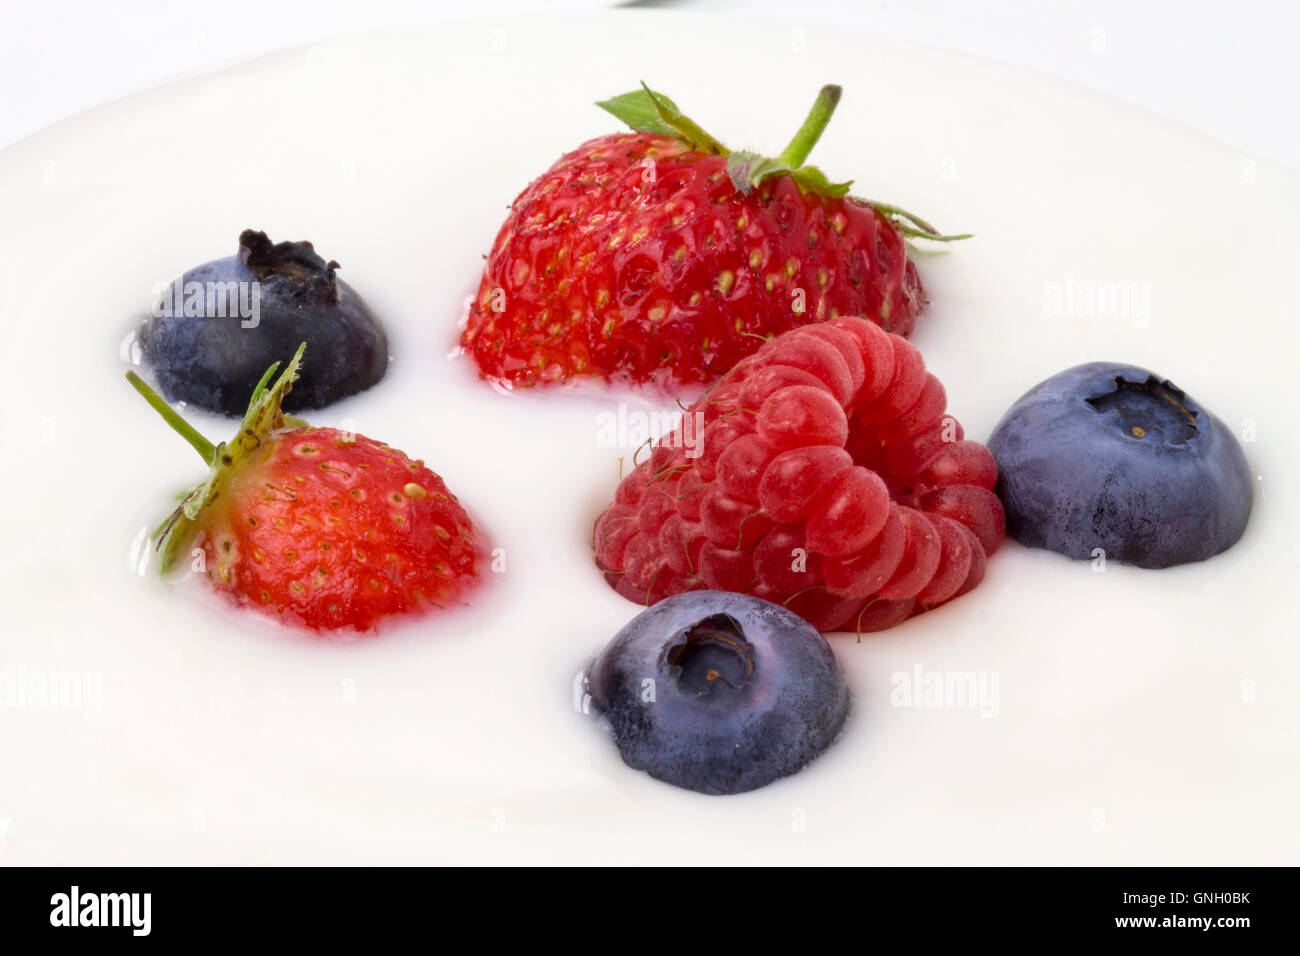 close-up of white yogurt with blueberries, strawberries and raspberries Stock Photo